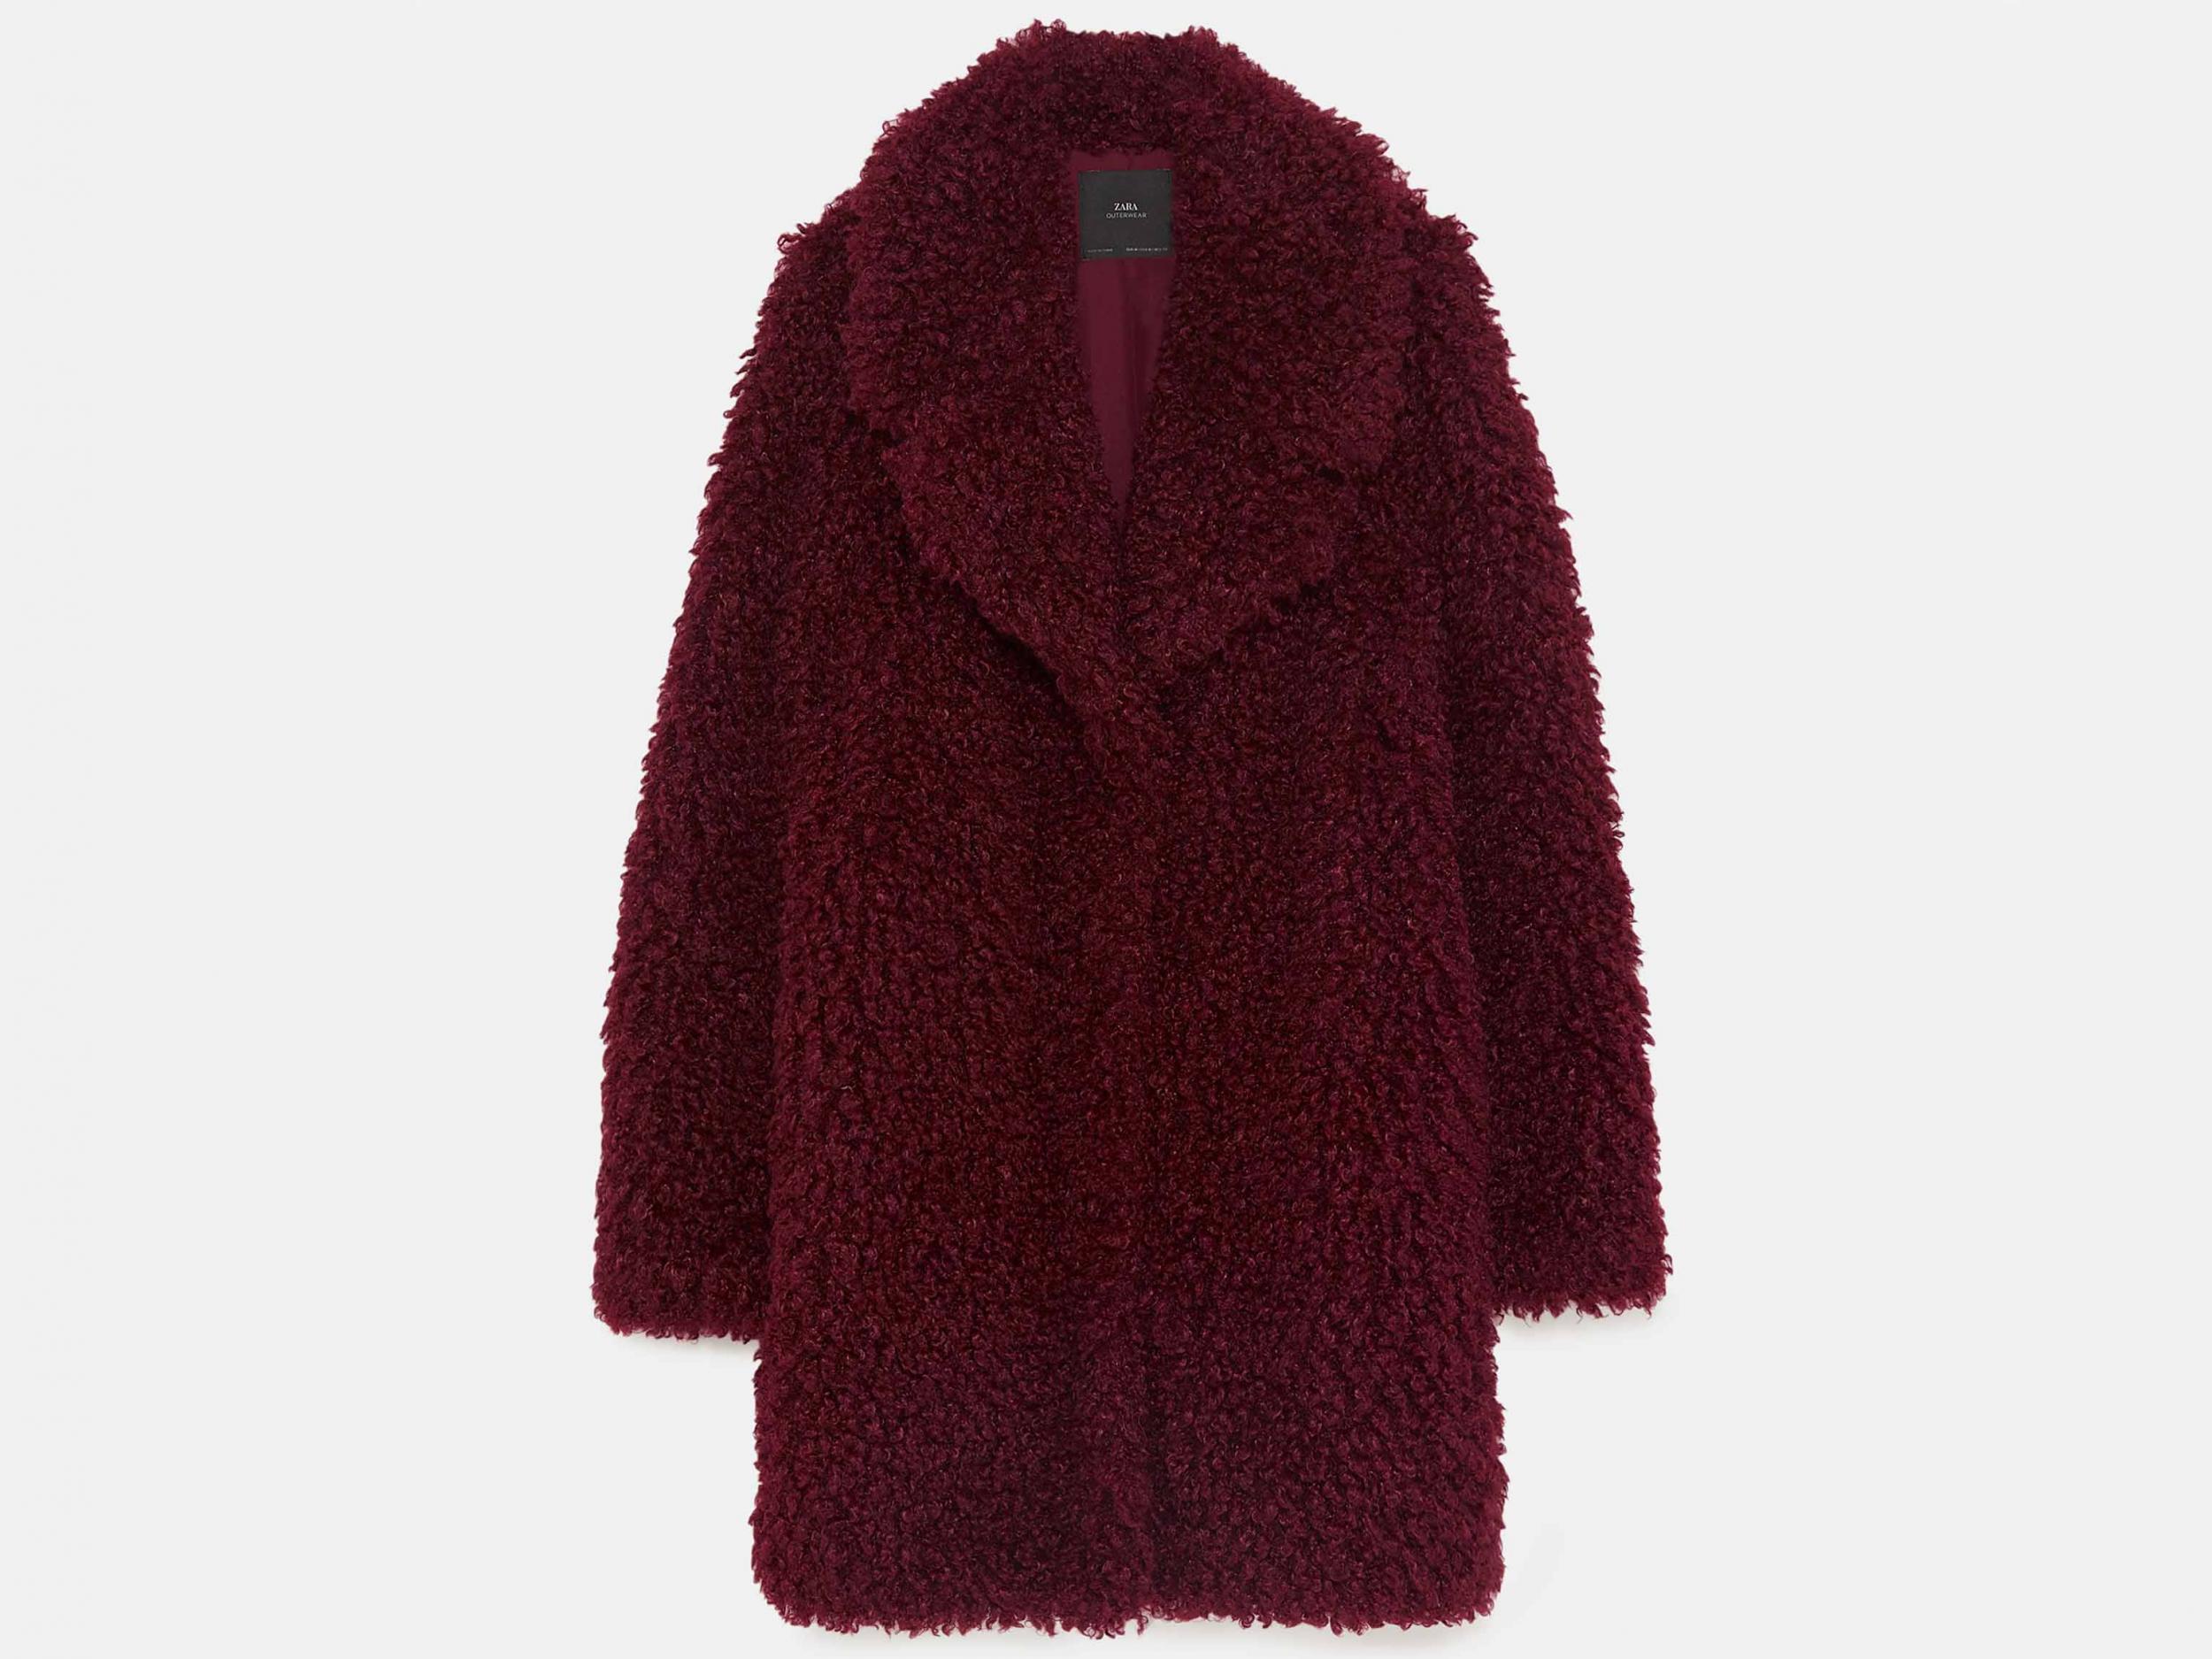 Soft Faux Fur Coat, £69.99, Zara